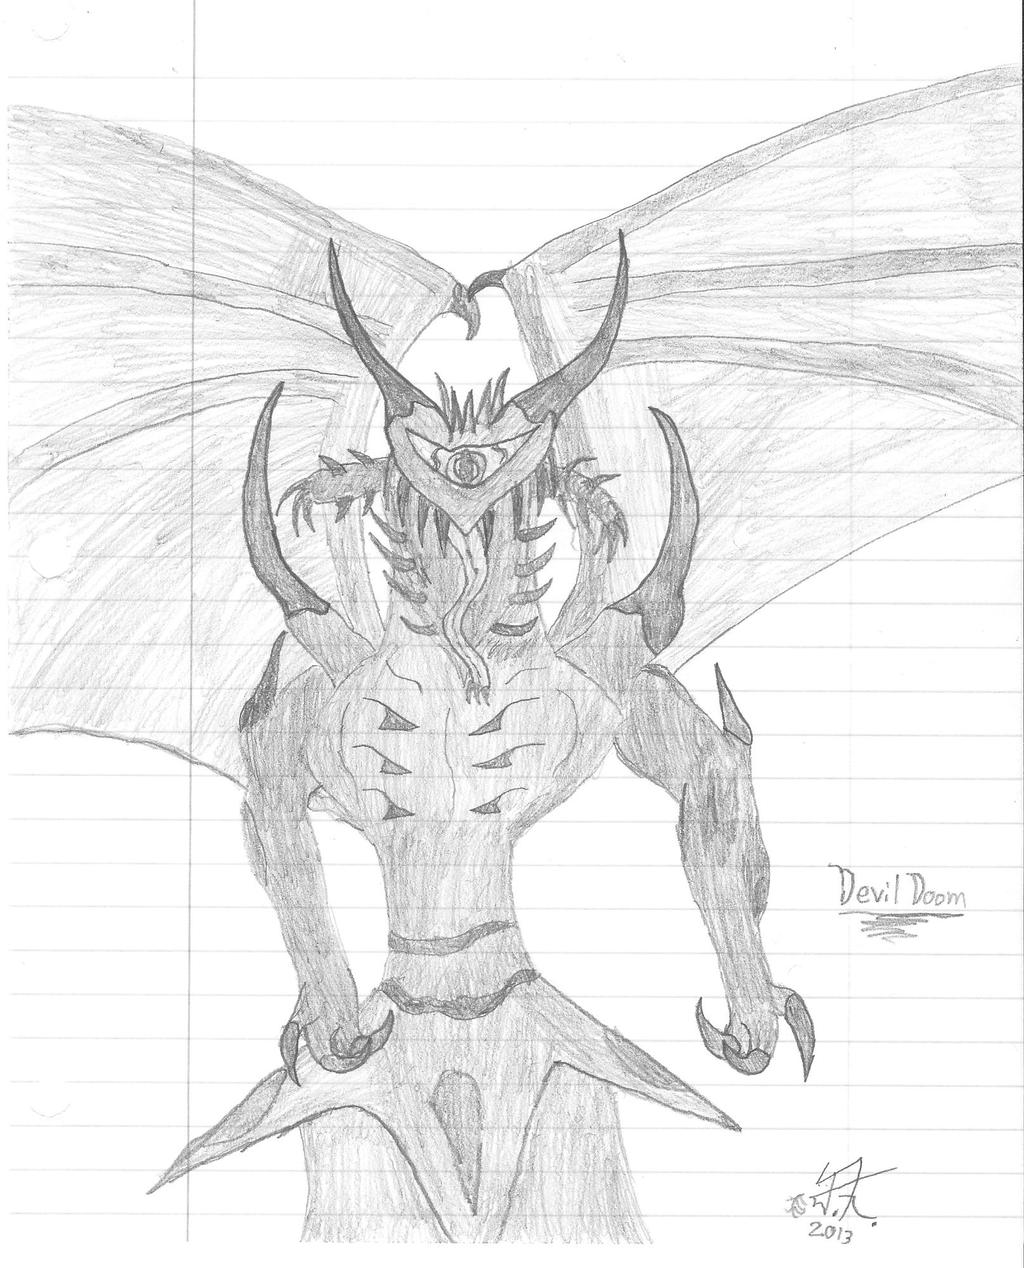 Devil sketchbook art